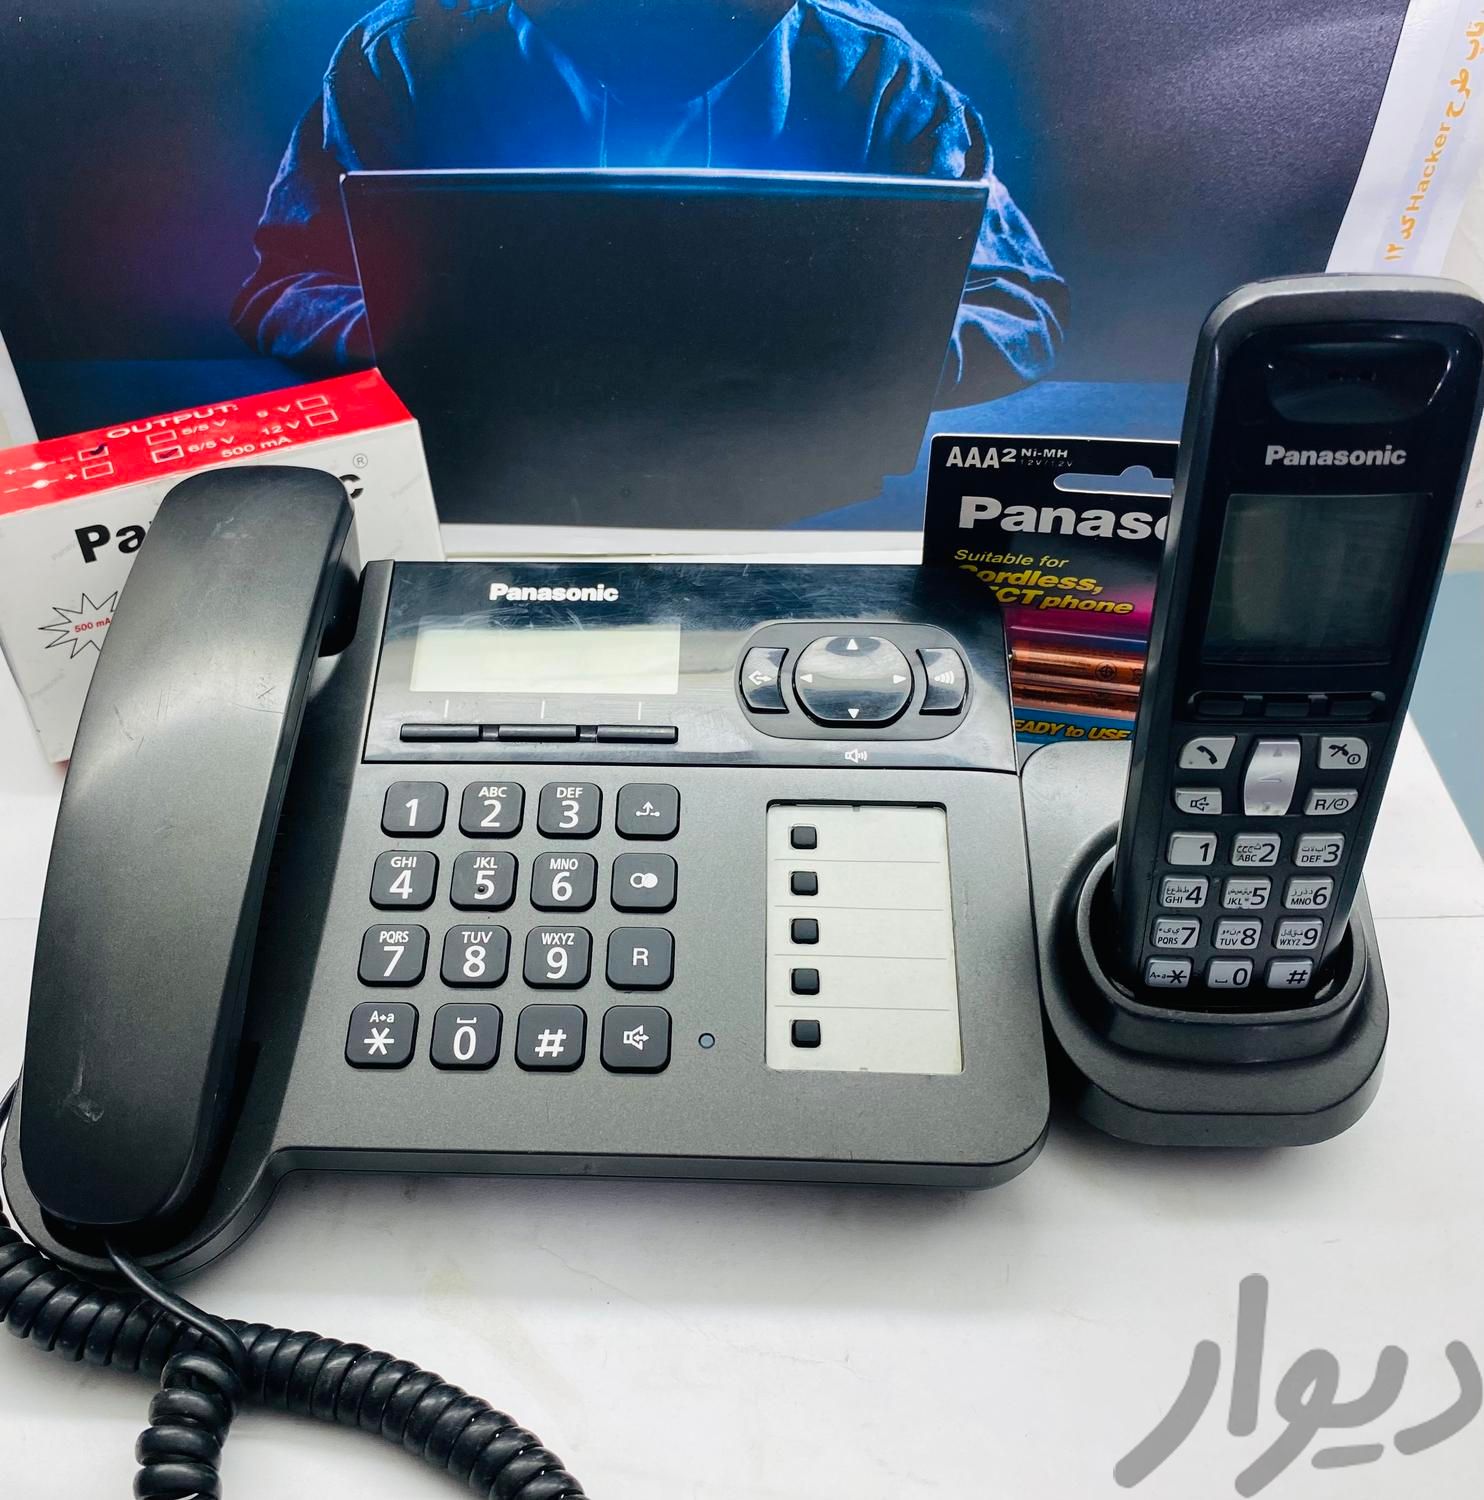 تلفن دو گوشی پاناسونیک مدلKX-TG5451|رایانه رومیزی|تهران, مسعودیه|دیوار